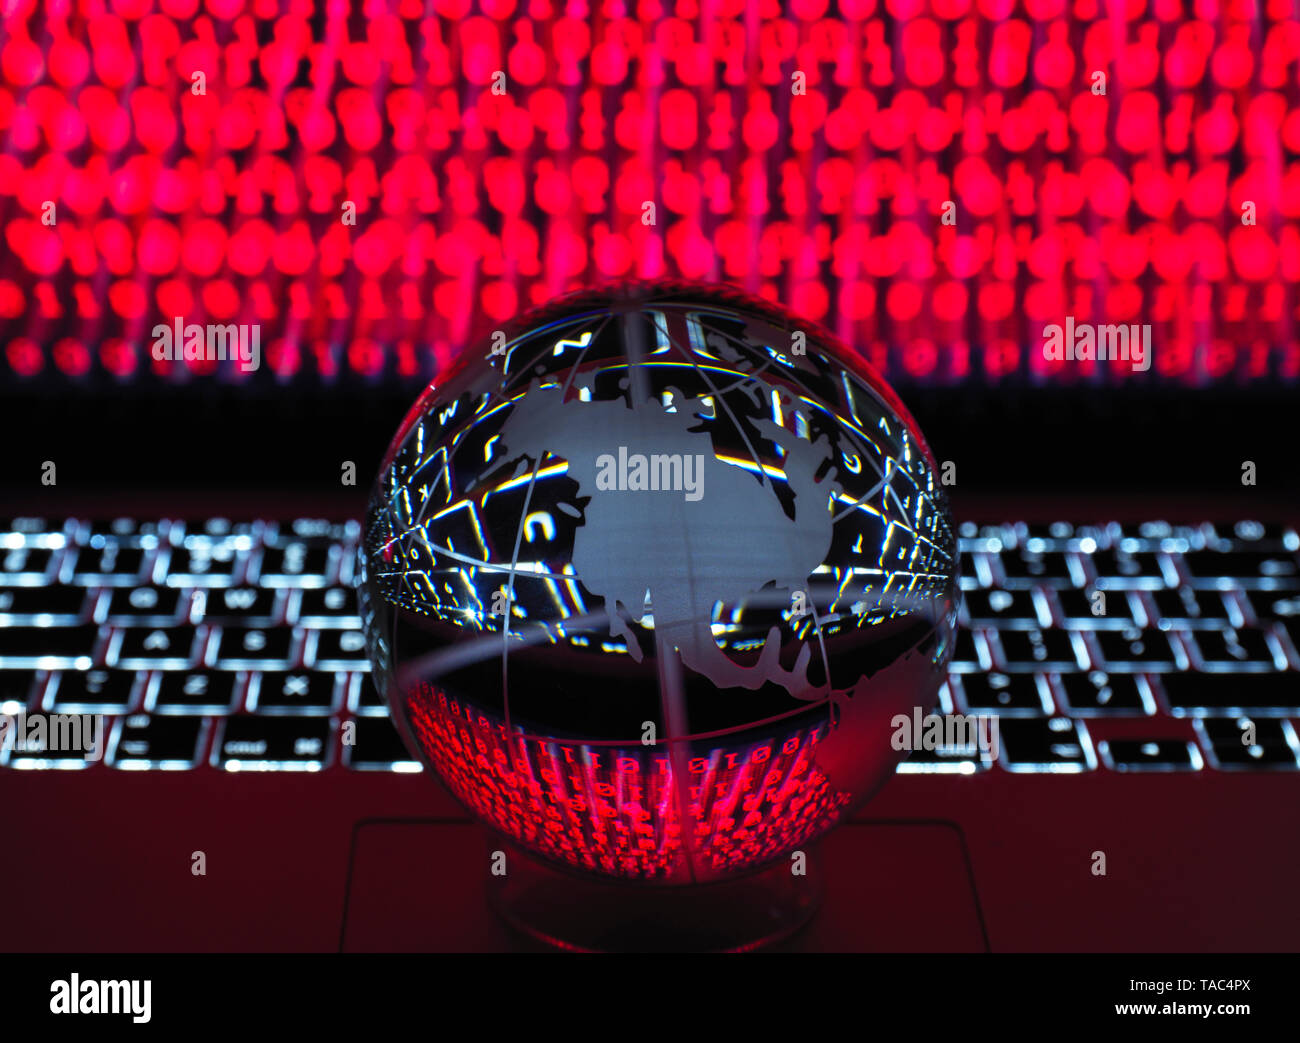 Globus veranschaulicht das Amerika auf einem Laptop Computer mit Bildschirm durch eine Cyber Attack angesteckt worden Stockfoto